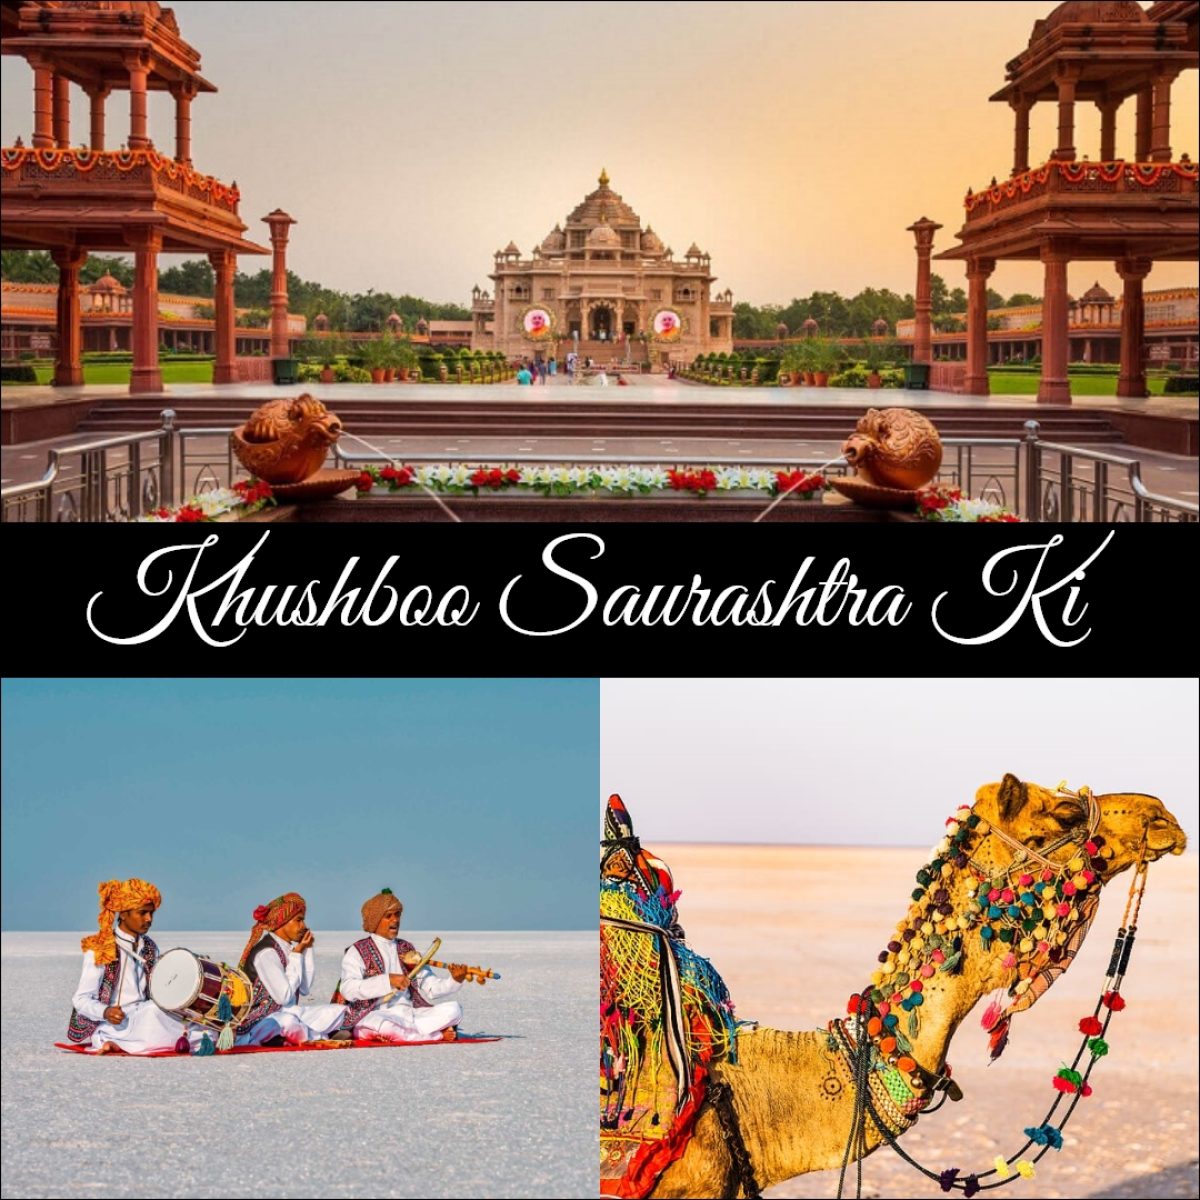 Khushboo Saurashtra Ki